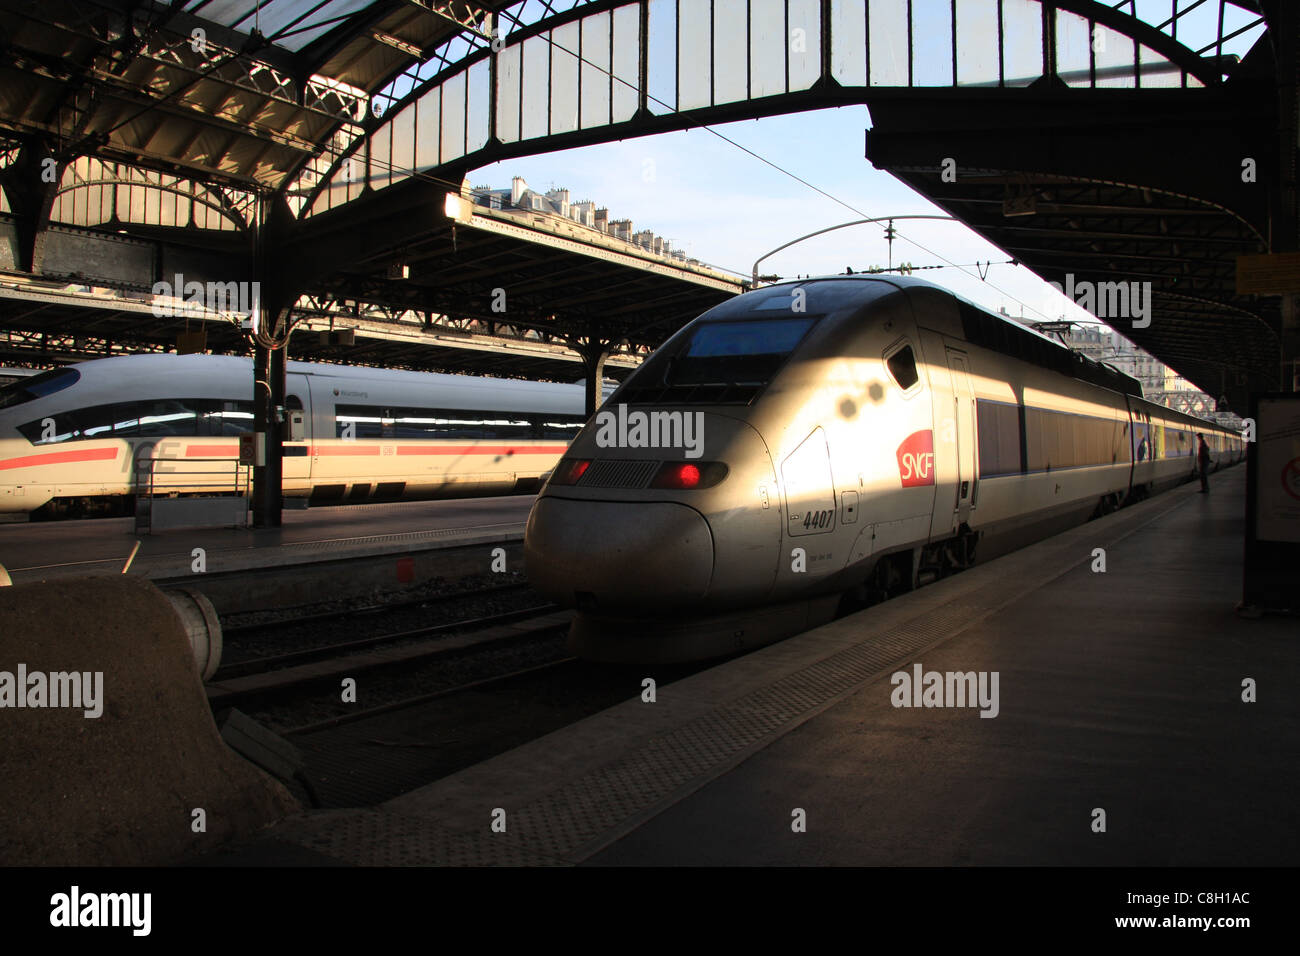 Paris, Gare de l'Est, railway station, train, railroad, transport, TGV, express, locomotive, engine Stock Photo